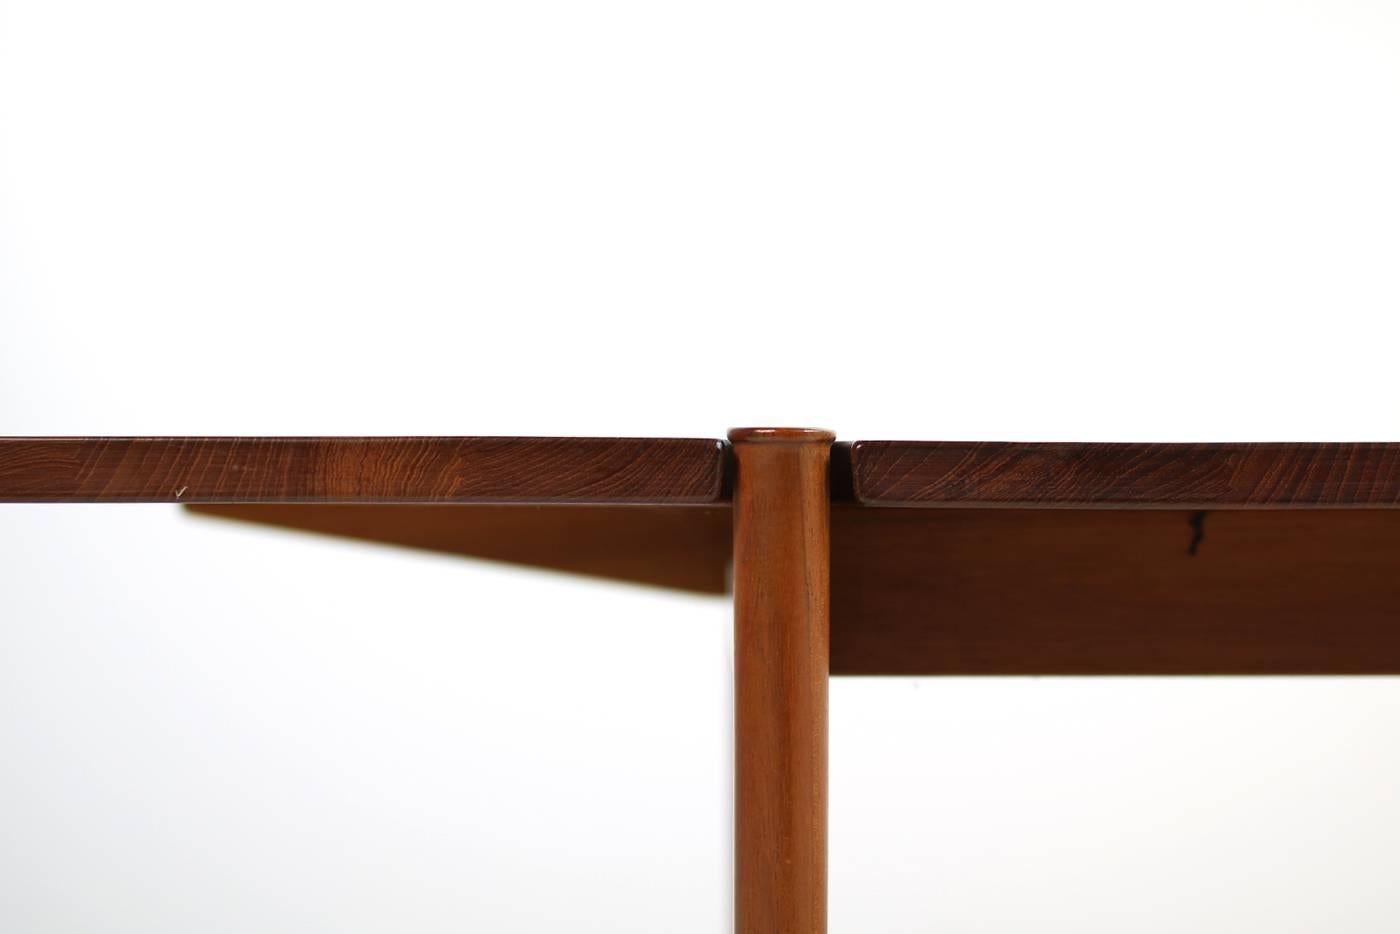 Mid-Century Modern 1960s Peter Hvidt Teak Coffee Table for France & Son Danish Modern Design